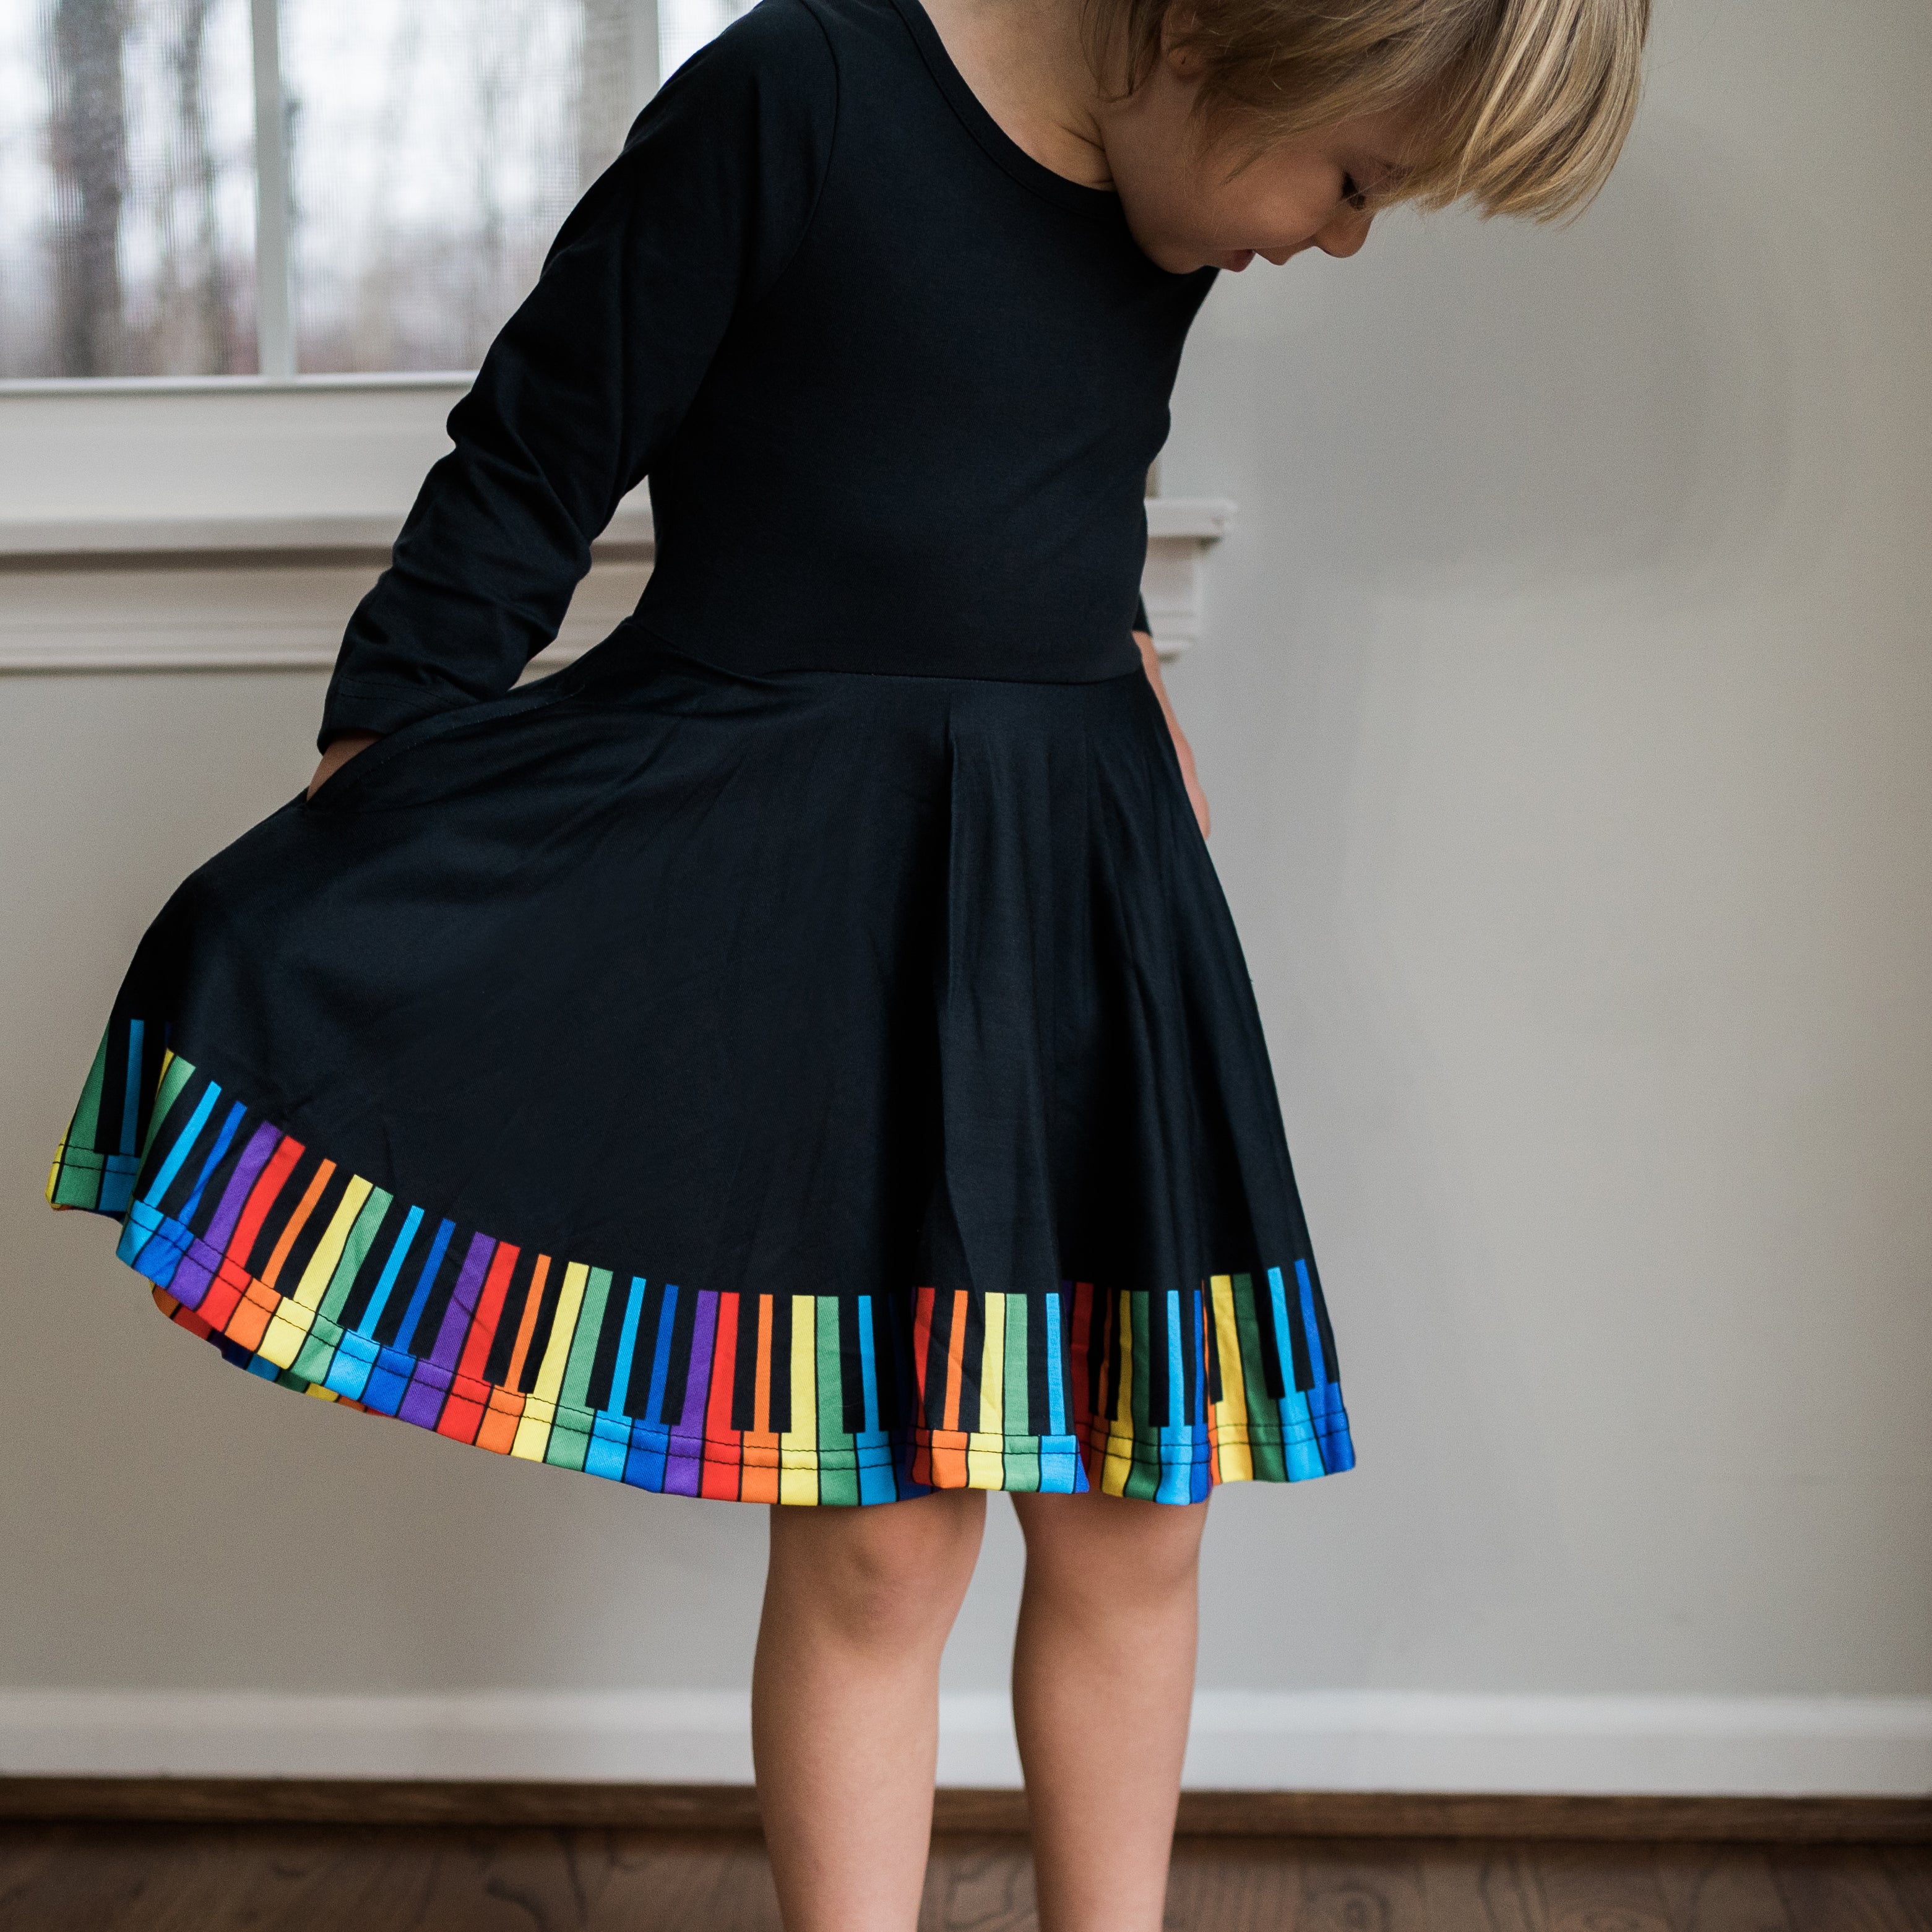 Chromatic Scales Kids Twirl Dress